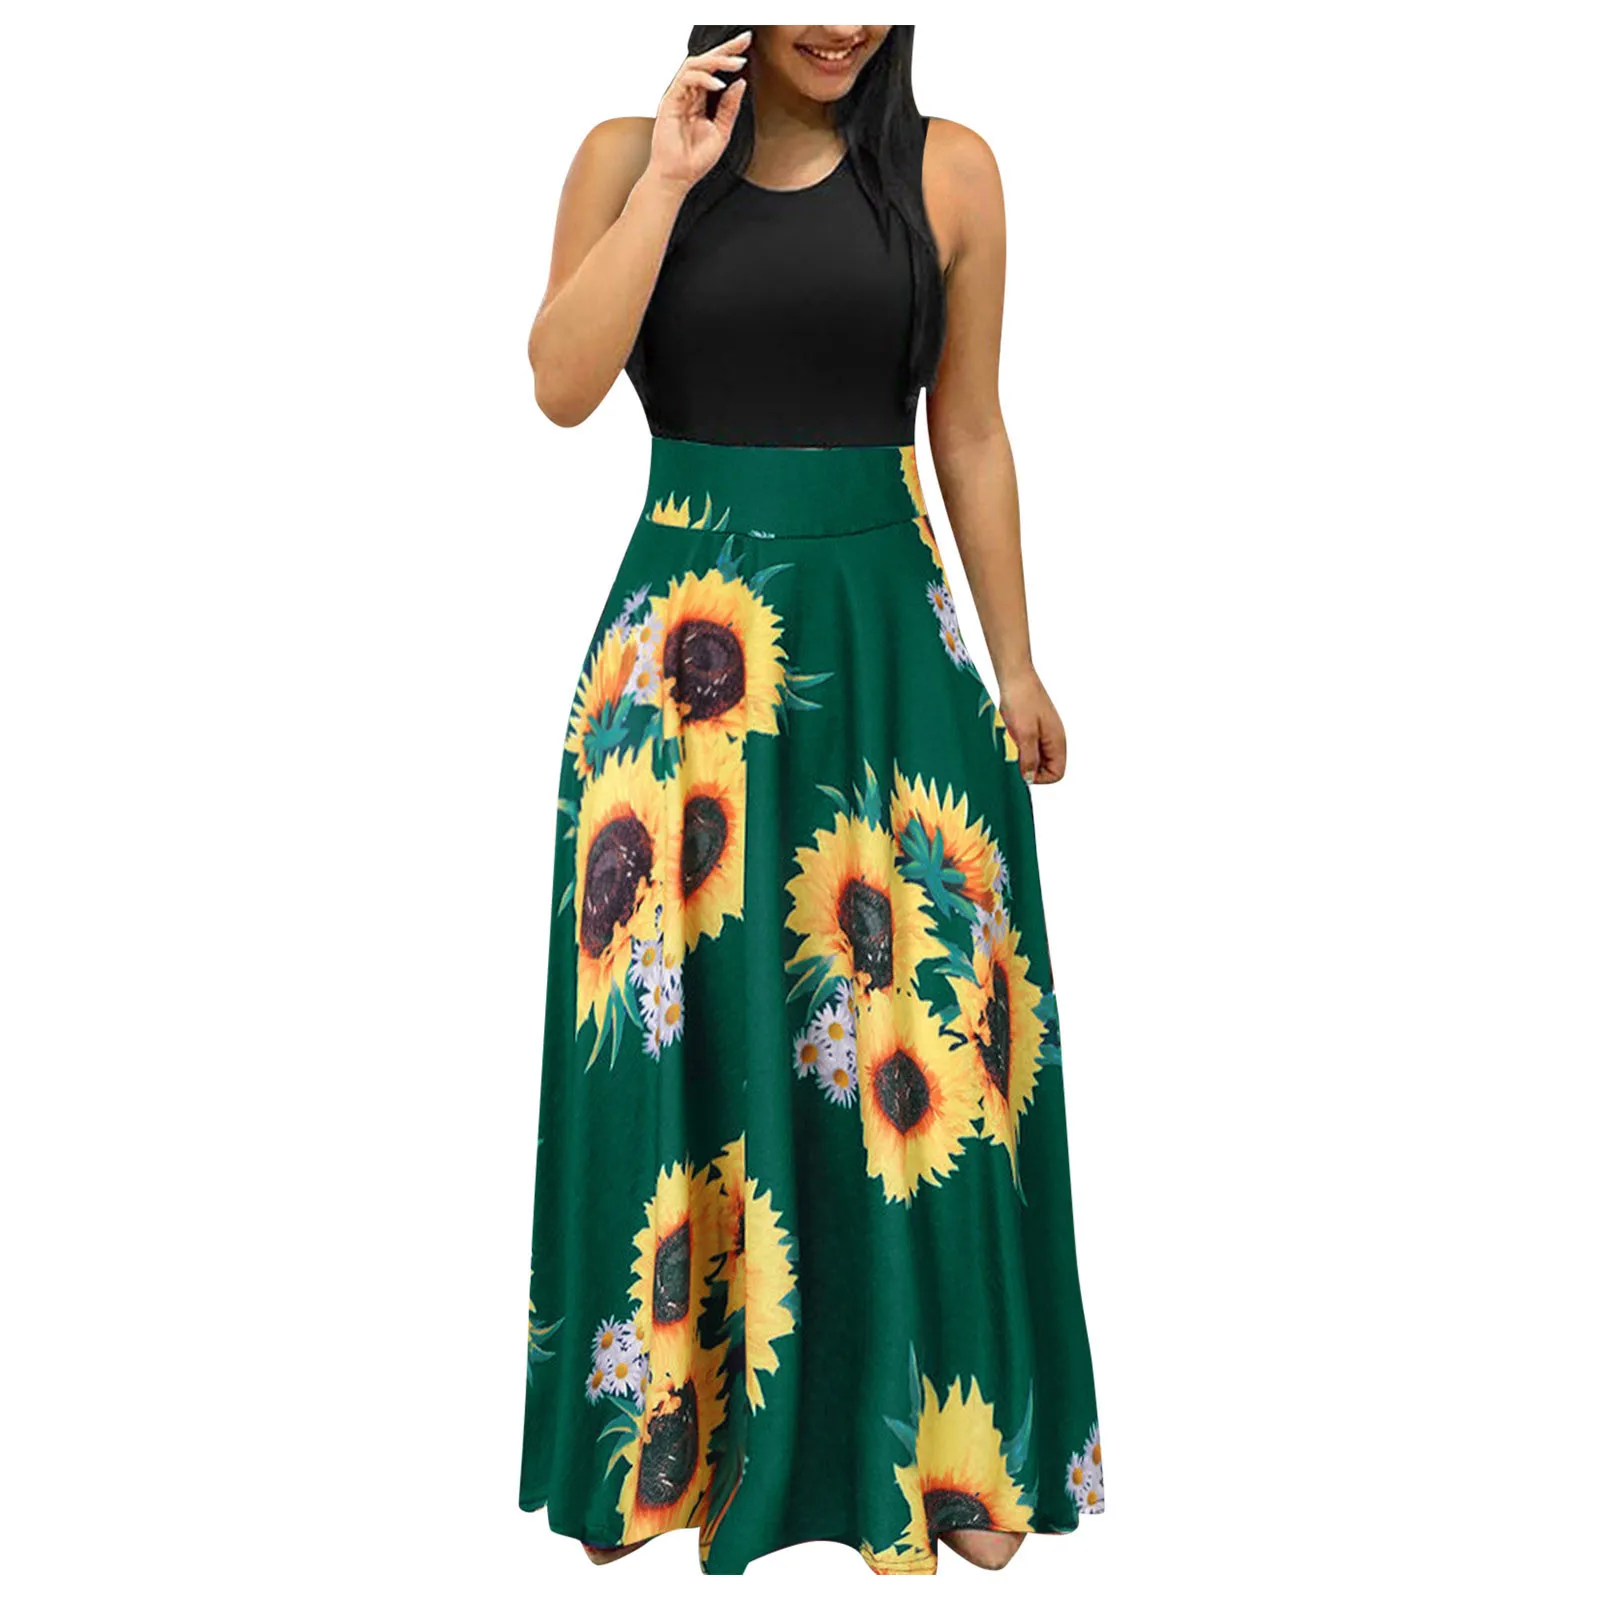 

Sunflower Print Sundress Bohemian Big Swing Beach Dress Women Casual Loose Short Sleeve Maxi Long Dress Summer Robes Vestidos